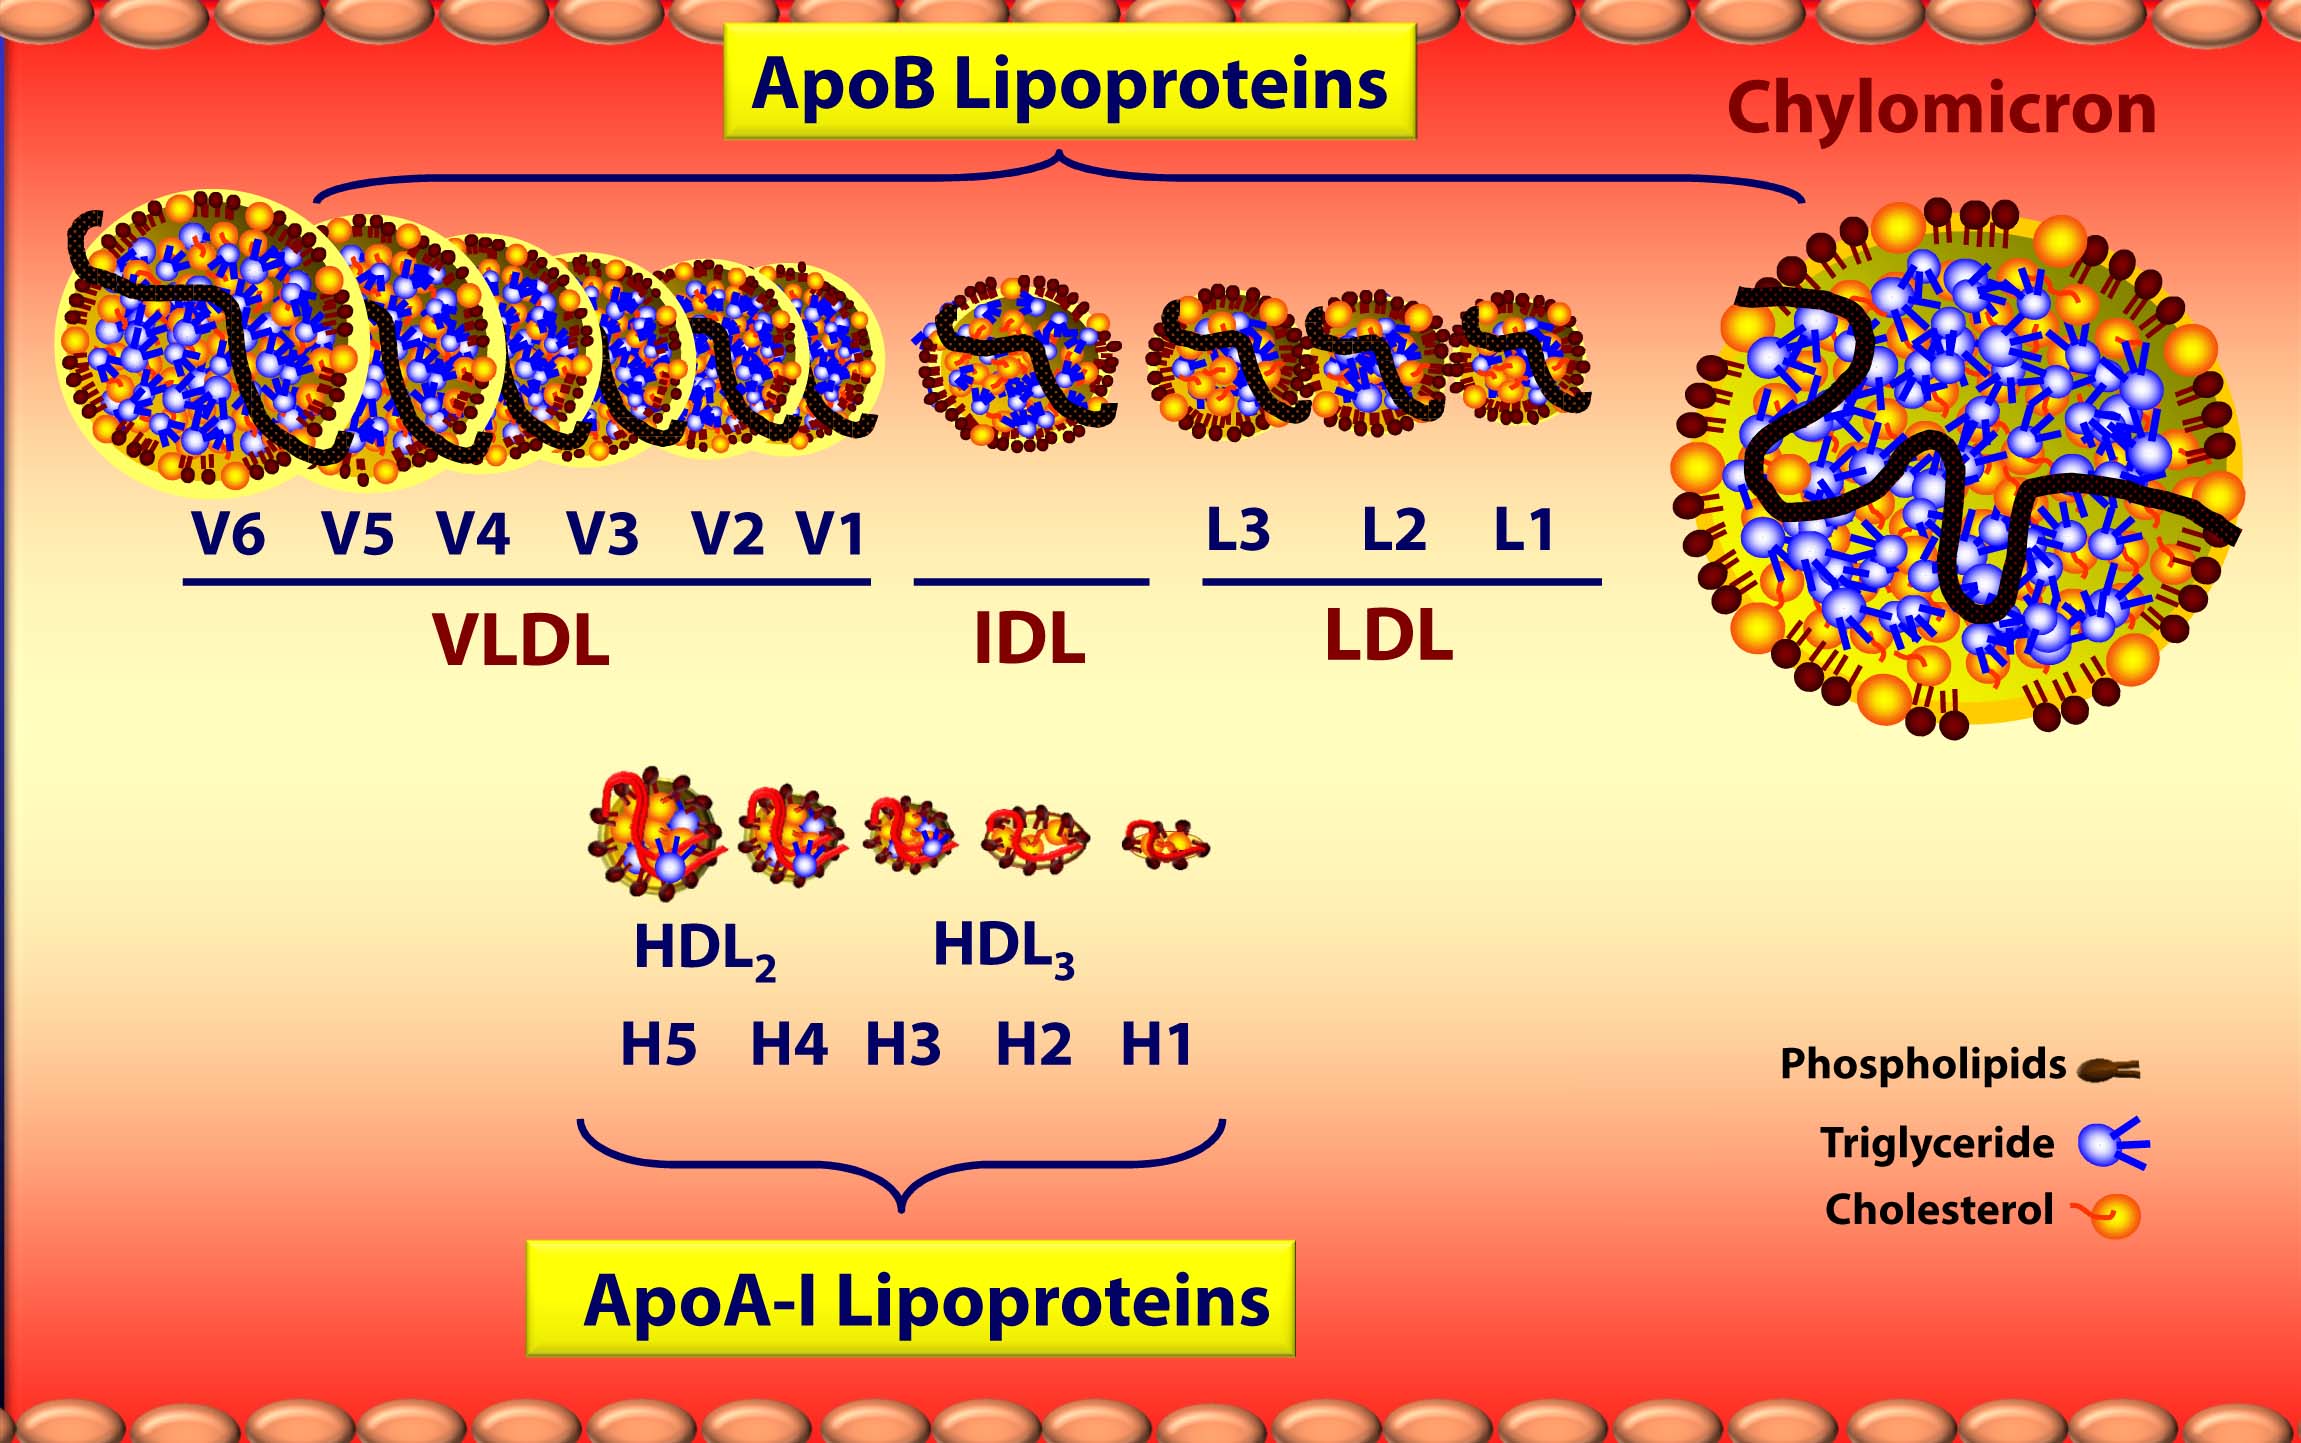 Lipoprotein sizes